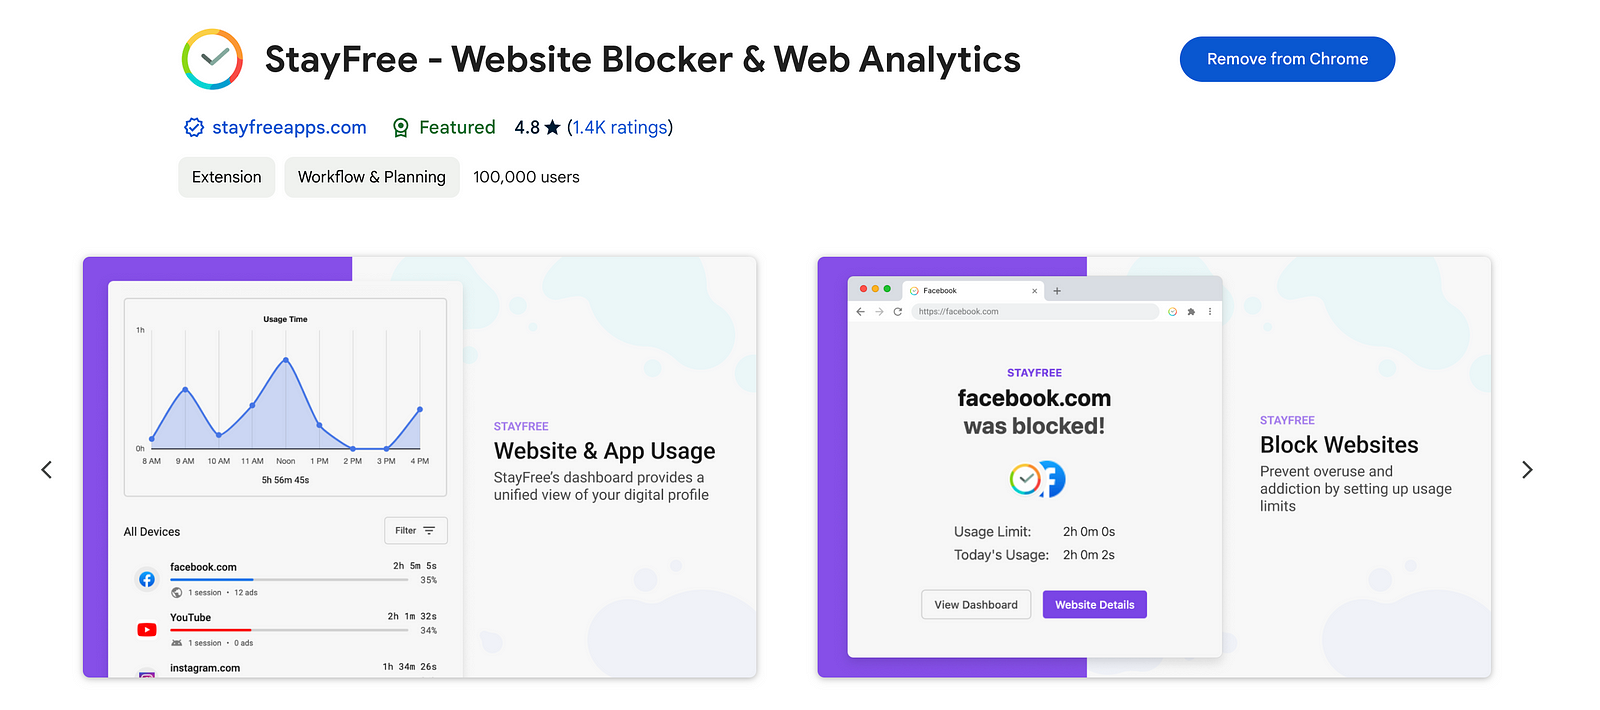 StayFree — Website Blocker & Web Analytics